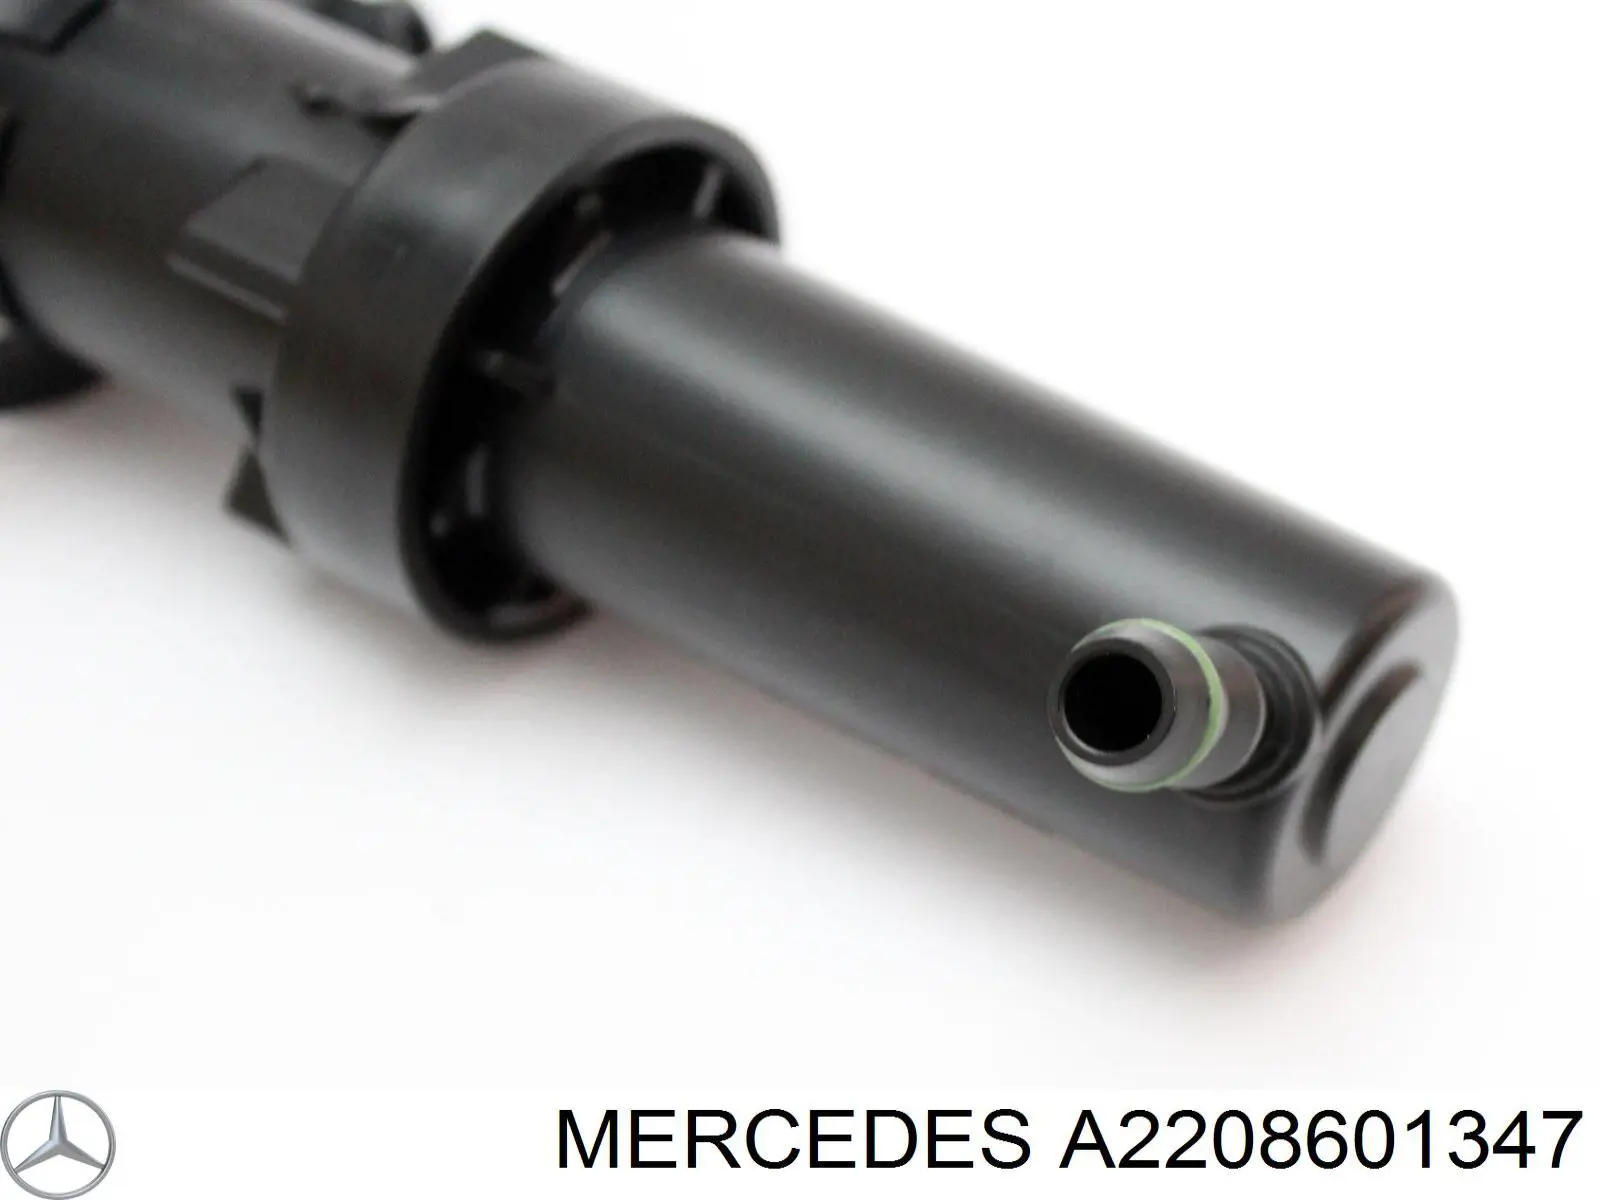 Soporte boquilla lavafaros cilindro (cilindro levantamiento) para Mercedes S (W220)